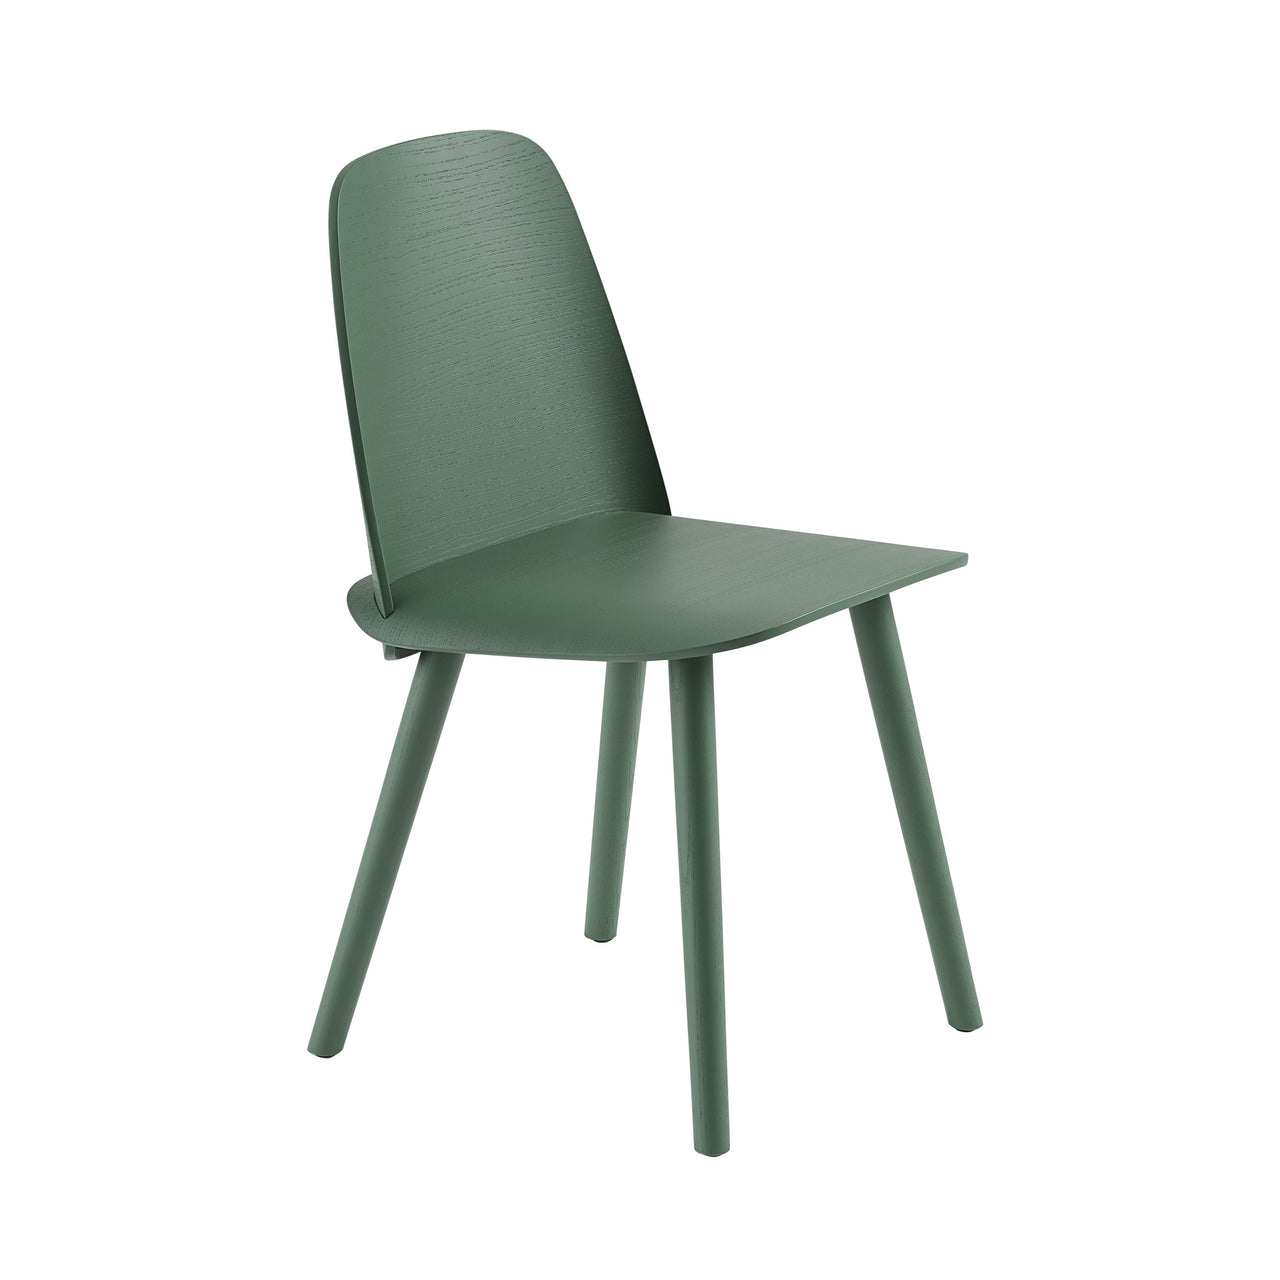 Nerd Chair: Green